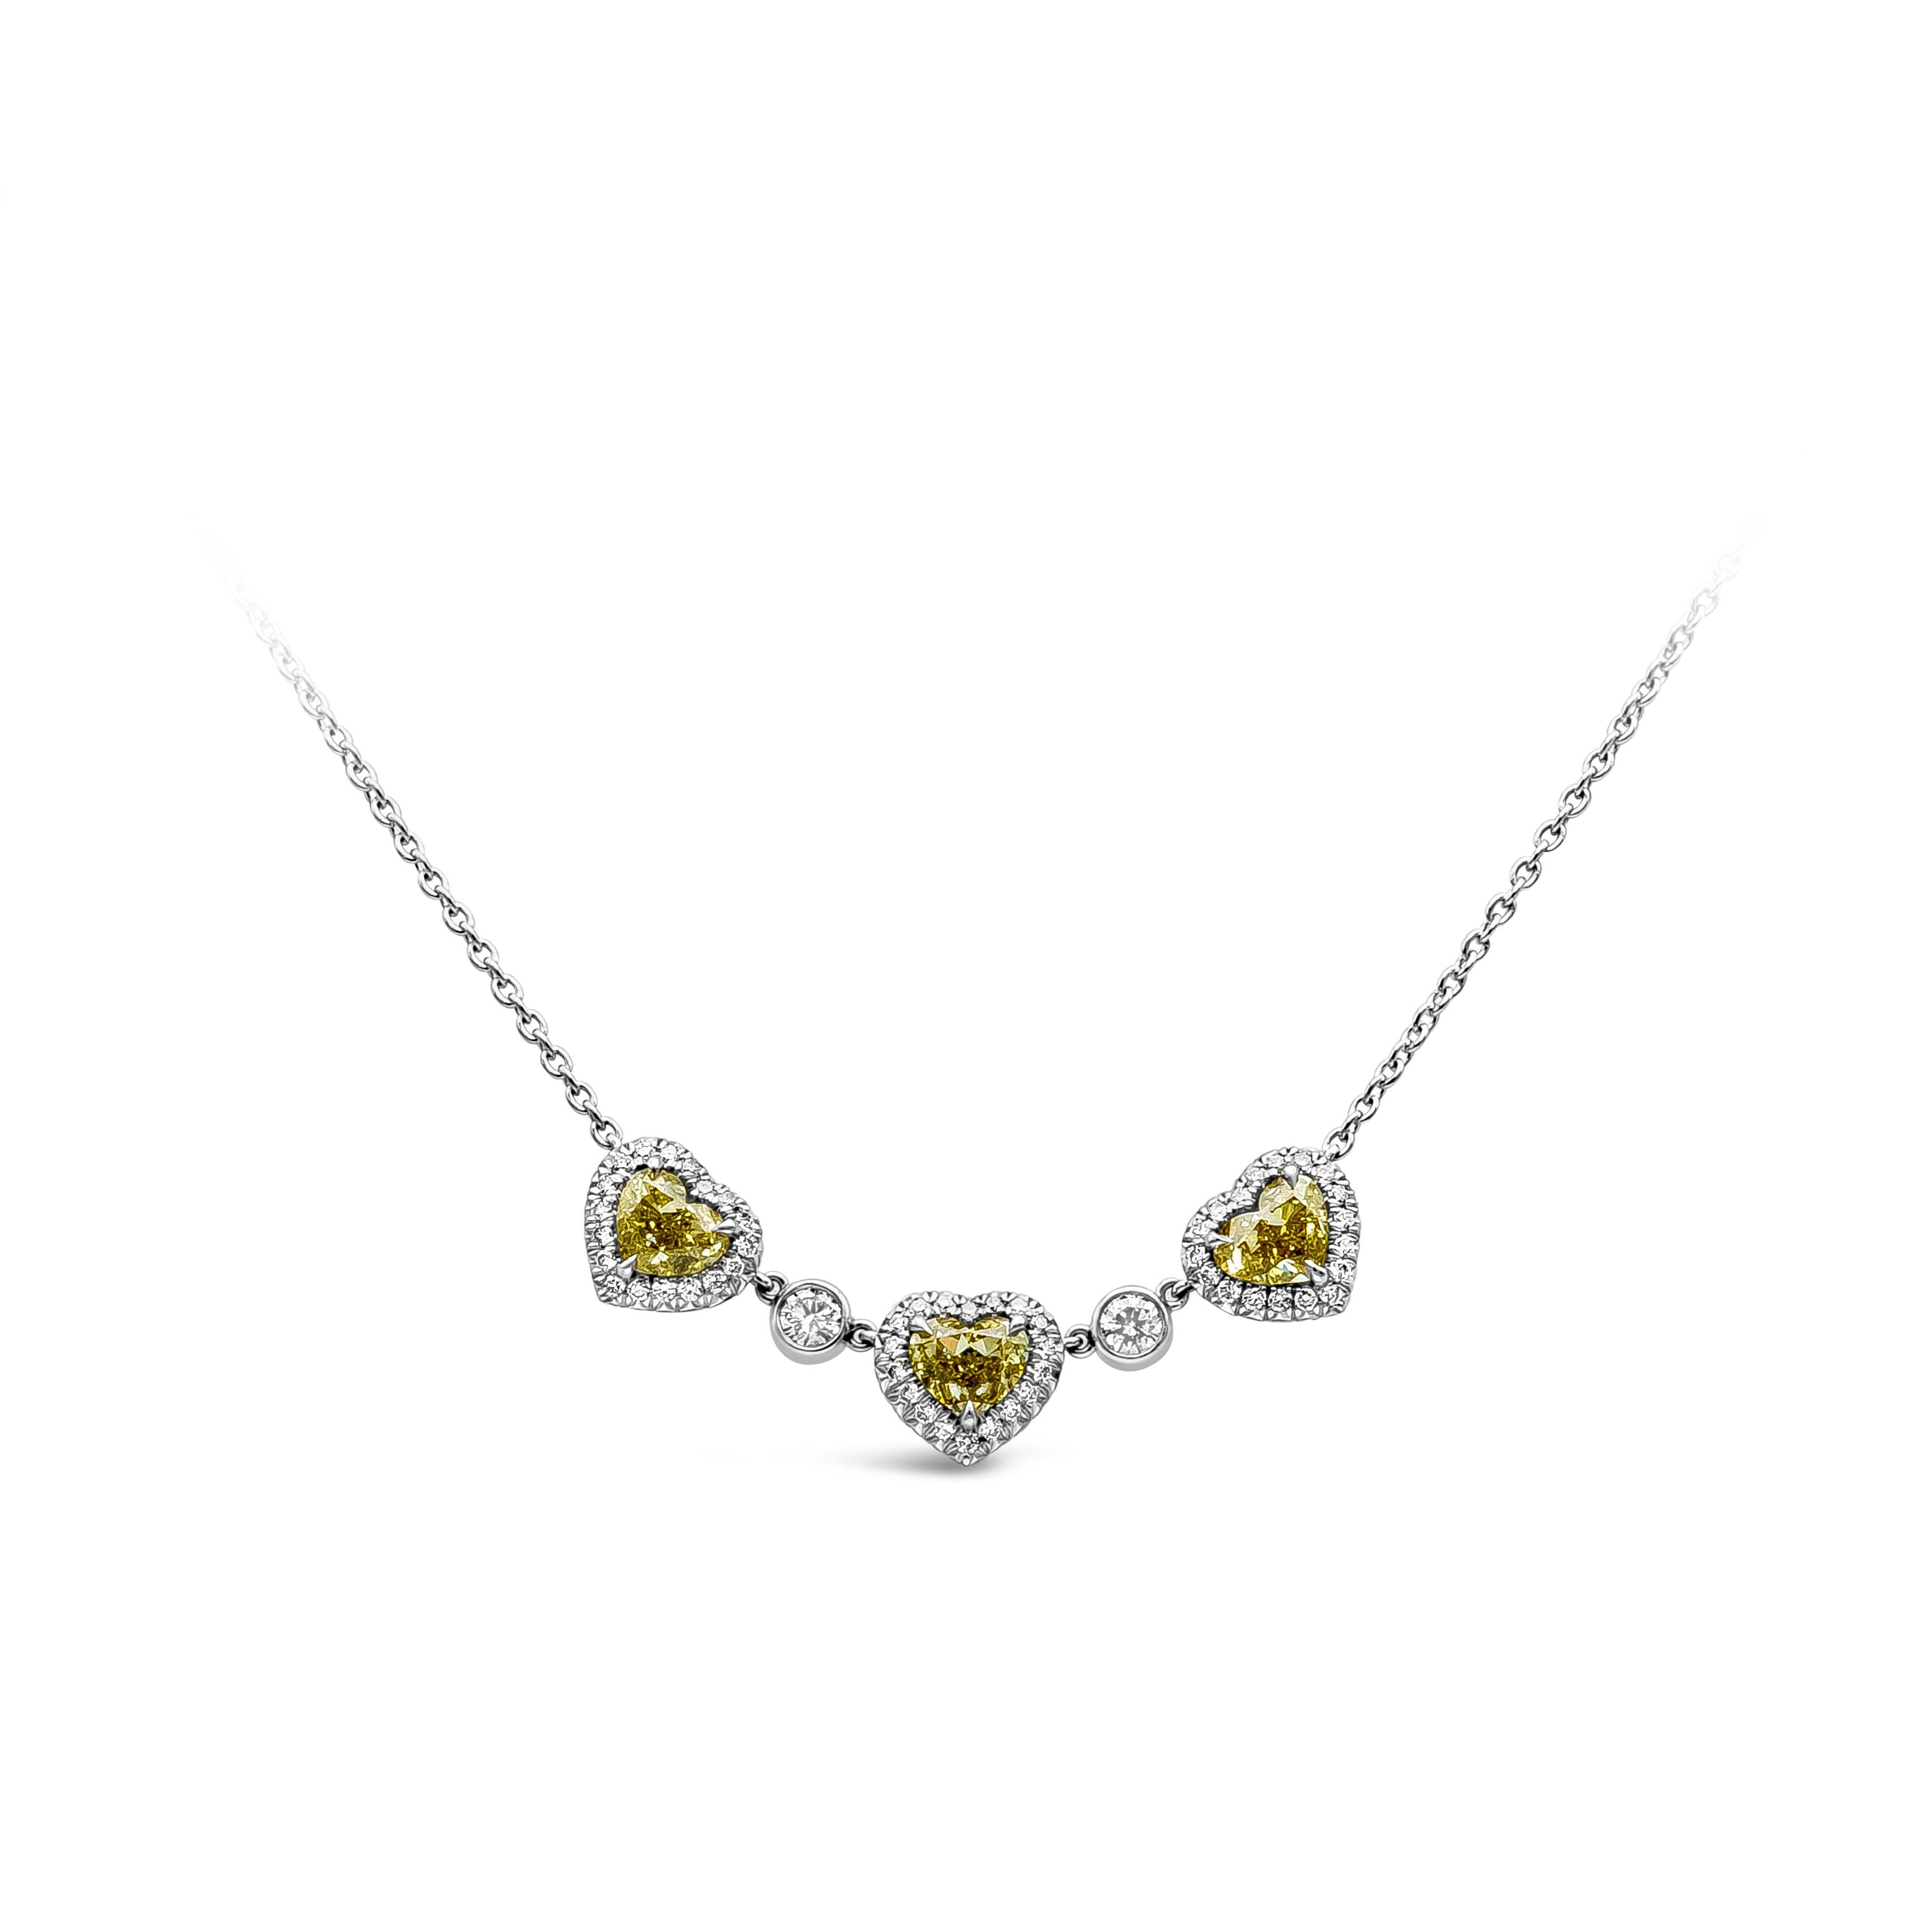 Un collier pendentif en diamant simple mais élégant mettant en valeur une rangée de trois diamants de forme cœur de couleur jaune intense fantaisie, accentués par des diamants ronds brillants. Deux diamants ronds sont intercalés entre les diamants